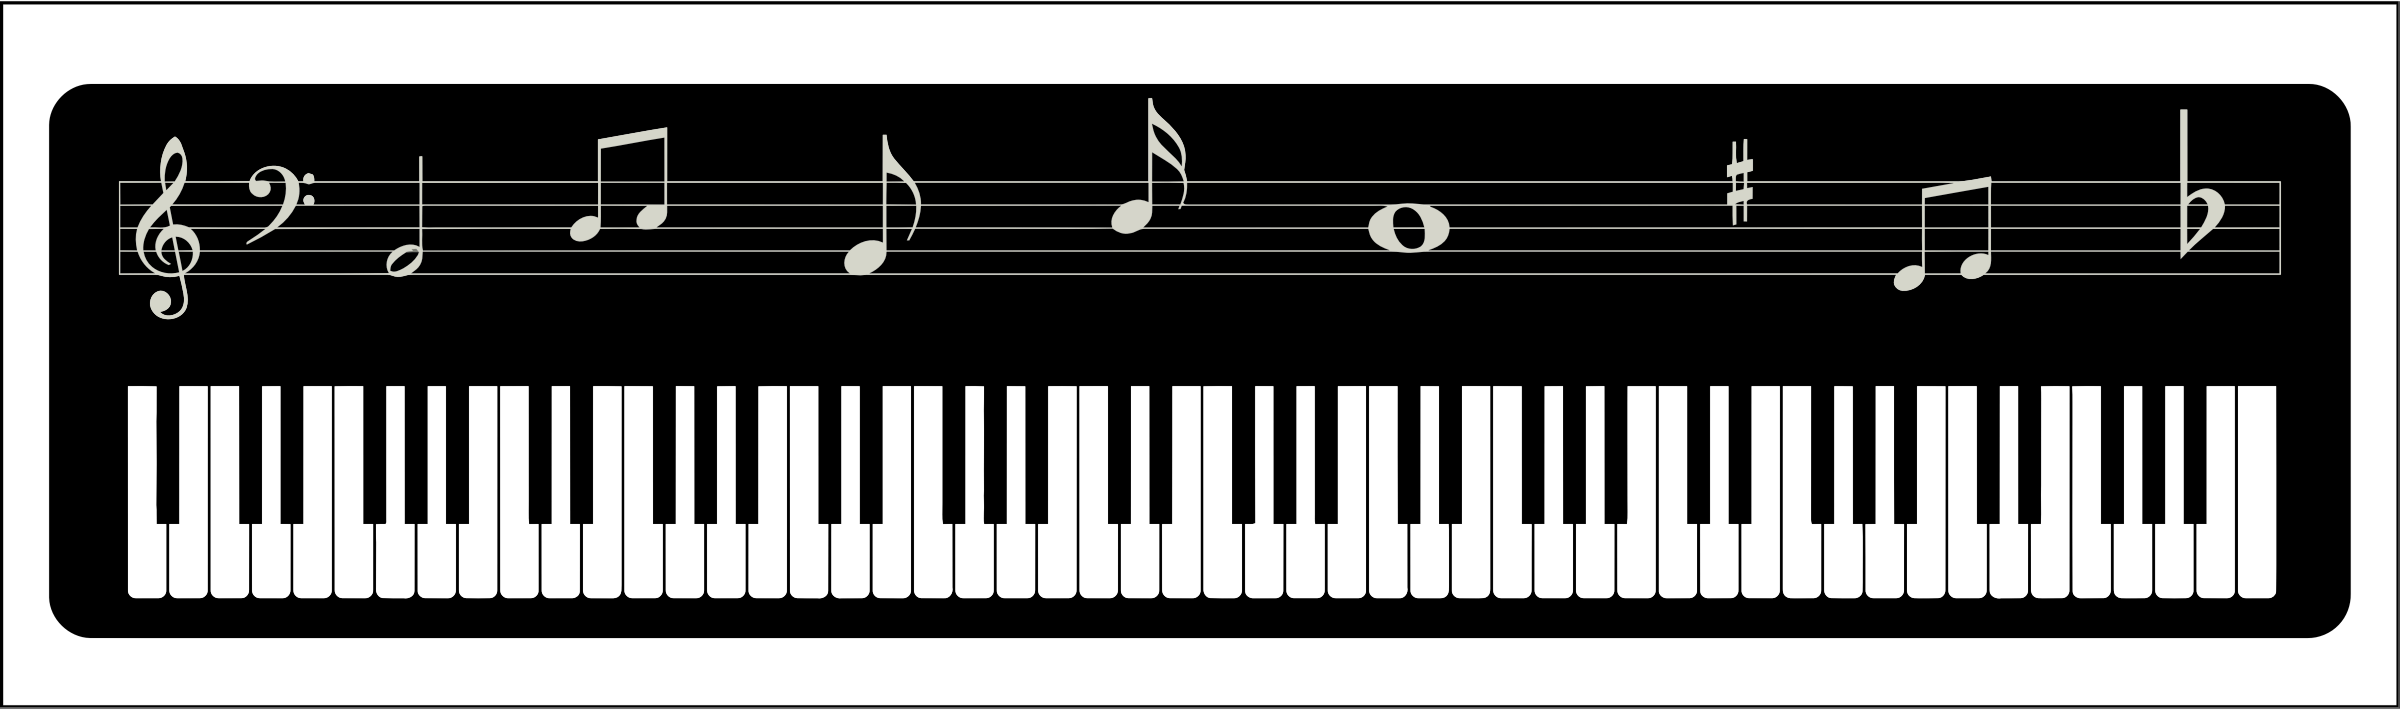 Immagine del PNG della tastiera di musica digitale